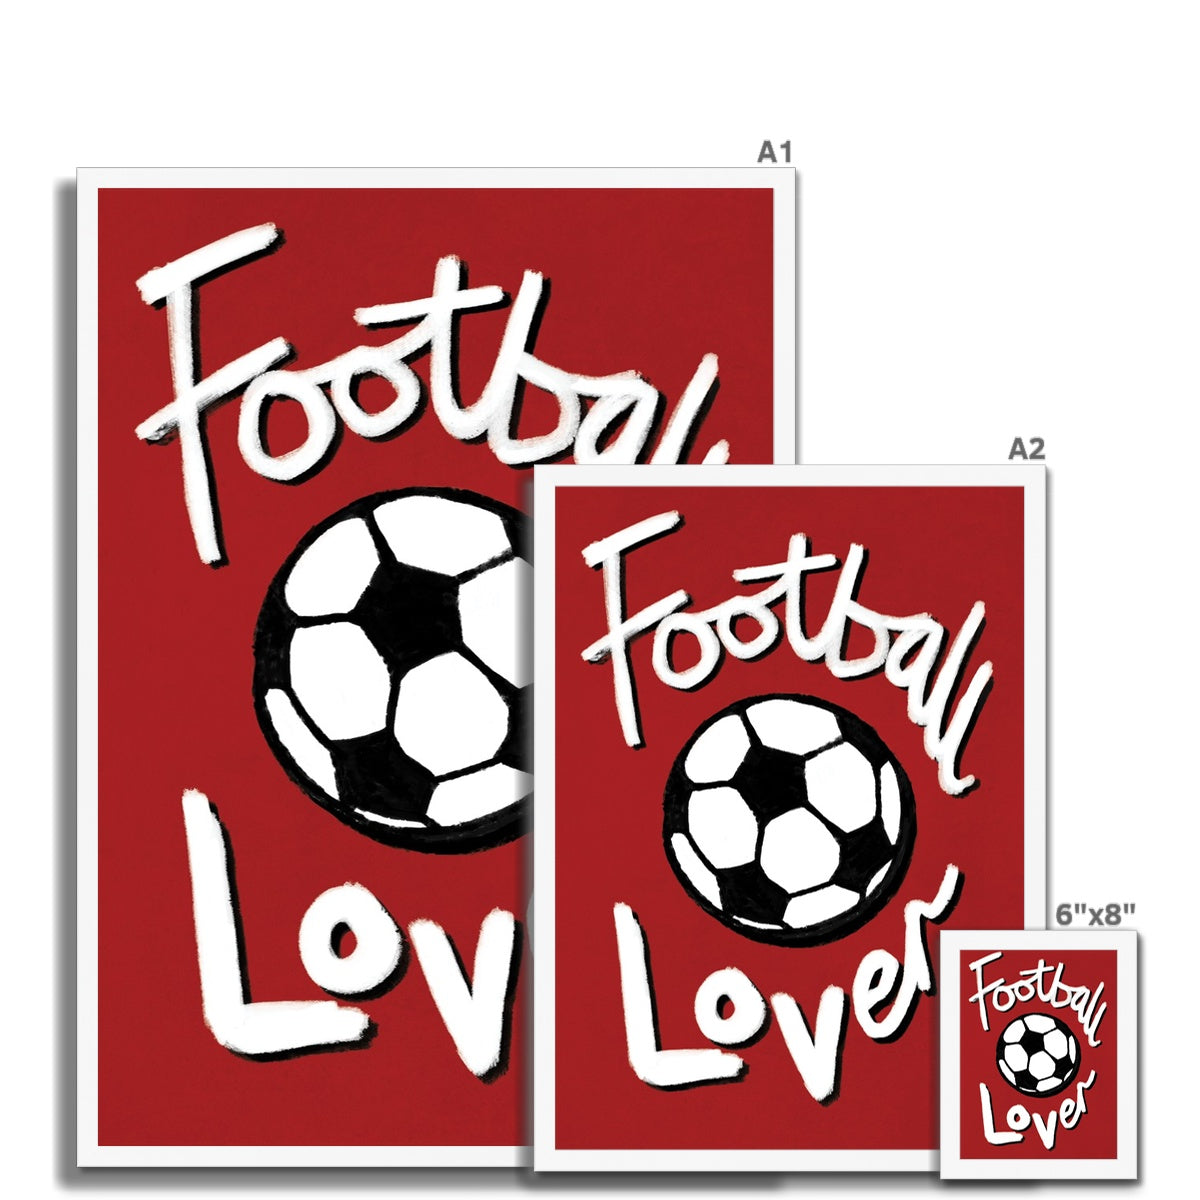 Football Lover - Red, Black and White Framed Print